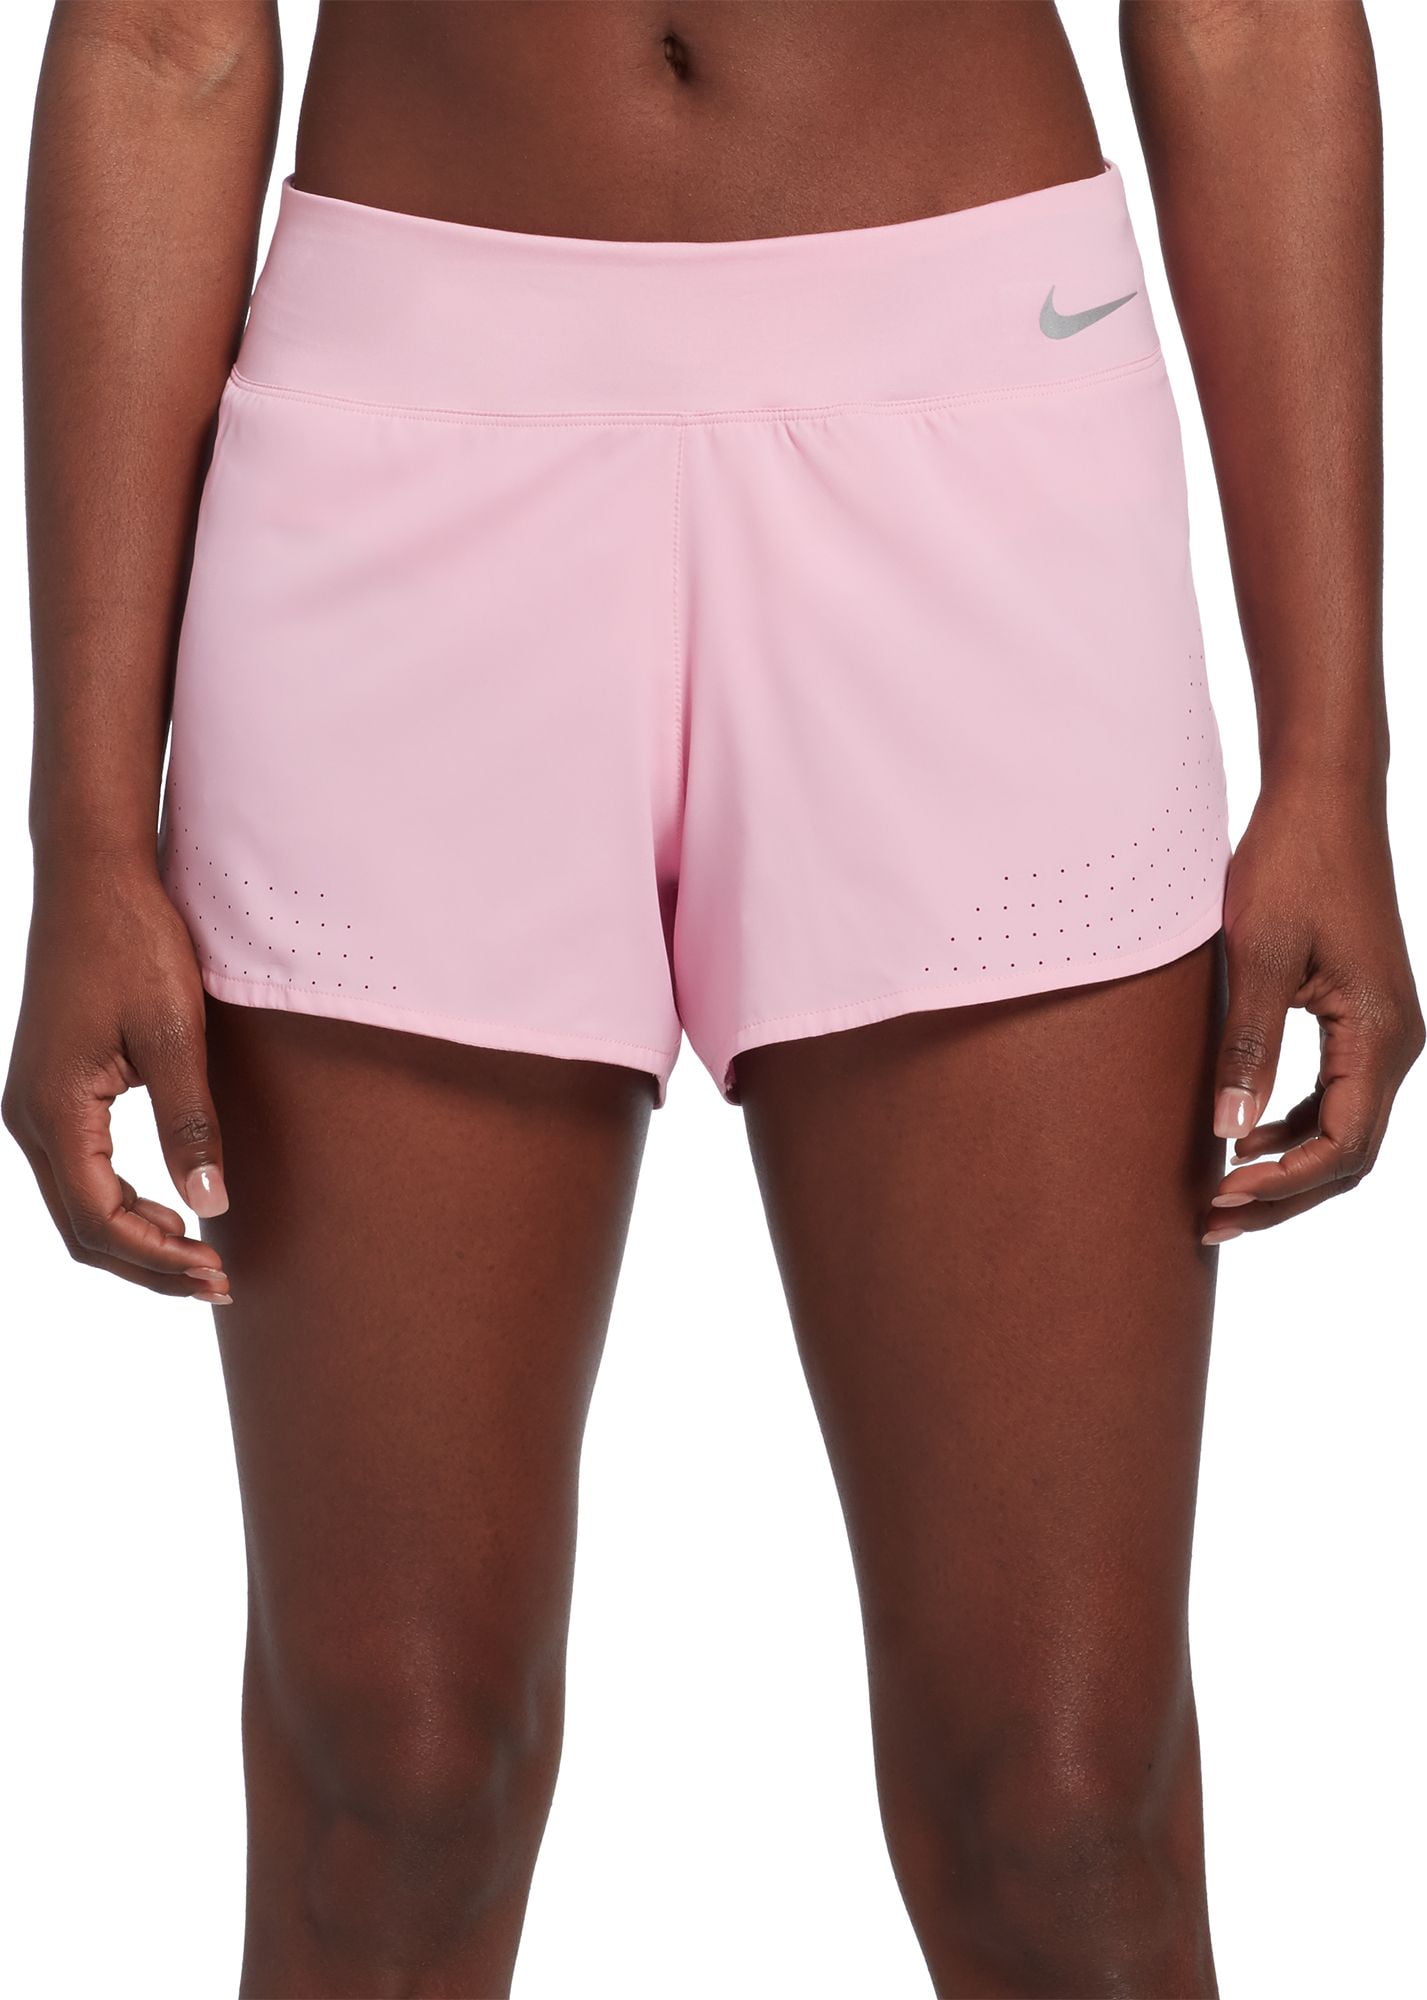 Nike - Nike Women's 5” Eclipse Running Shorts - Walmart.com - Walmart.com